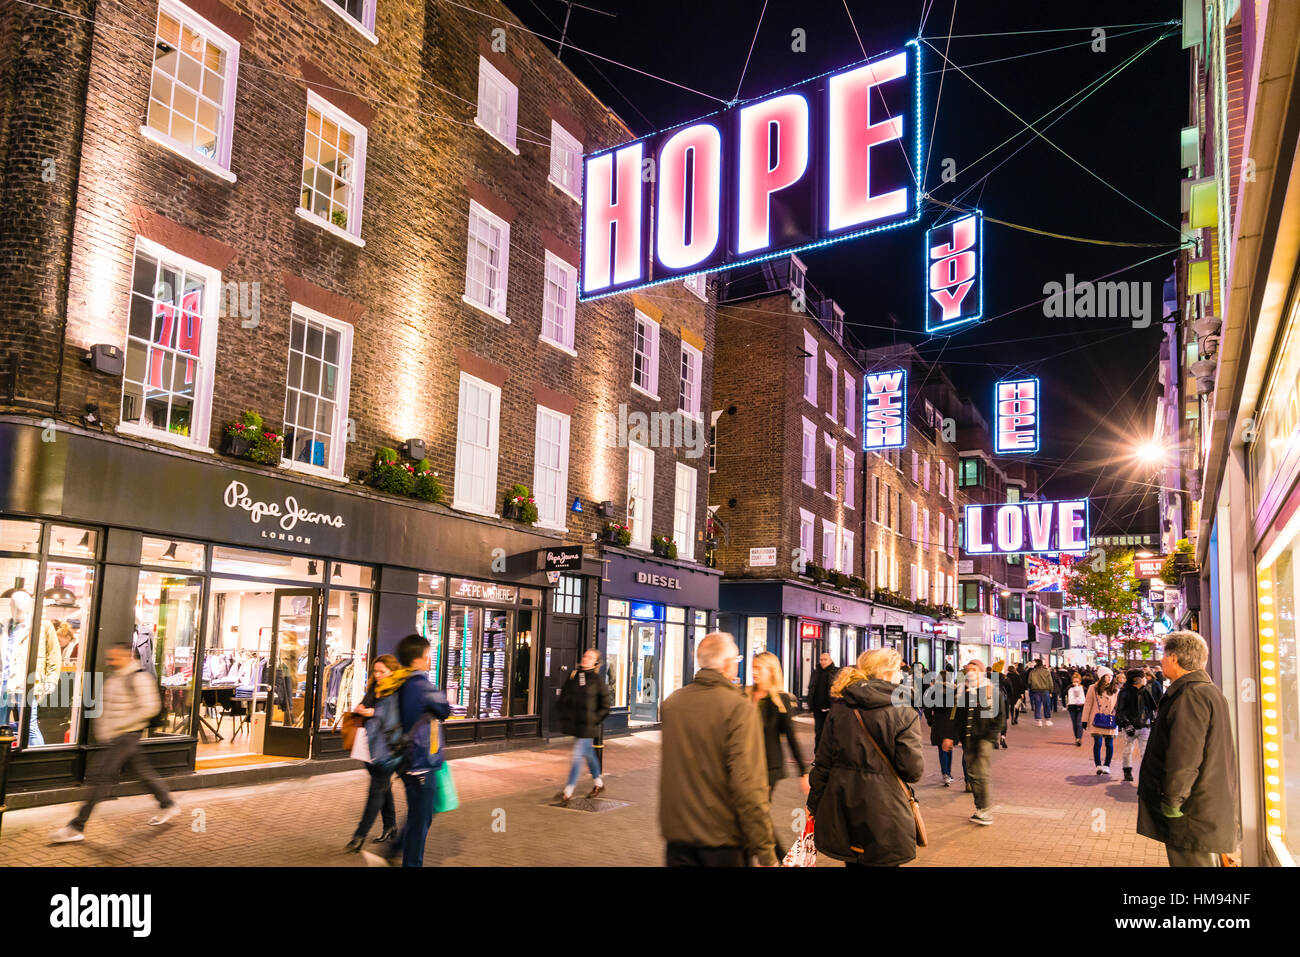 Alternative festliche Weihnachtsbeleuchtung in der Carnaby Street, Soho, London, England, Vereinigtes Königreich Stockfoto